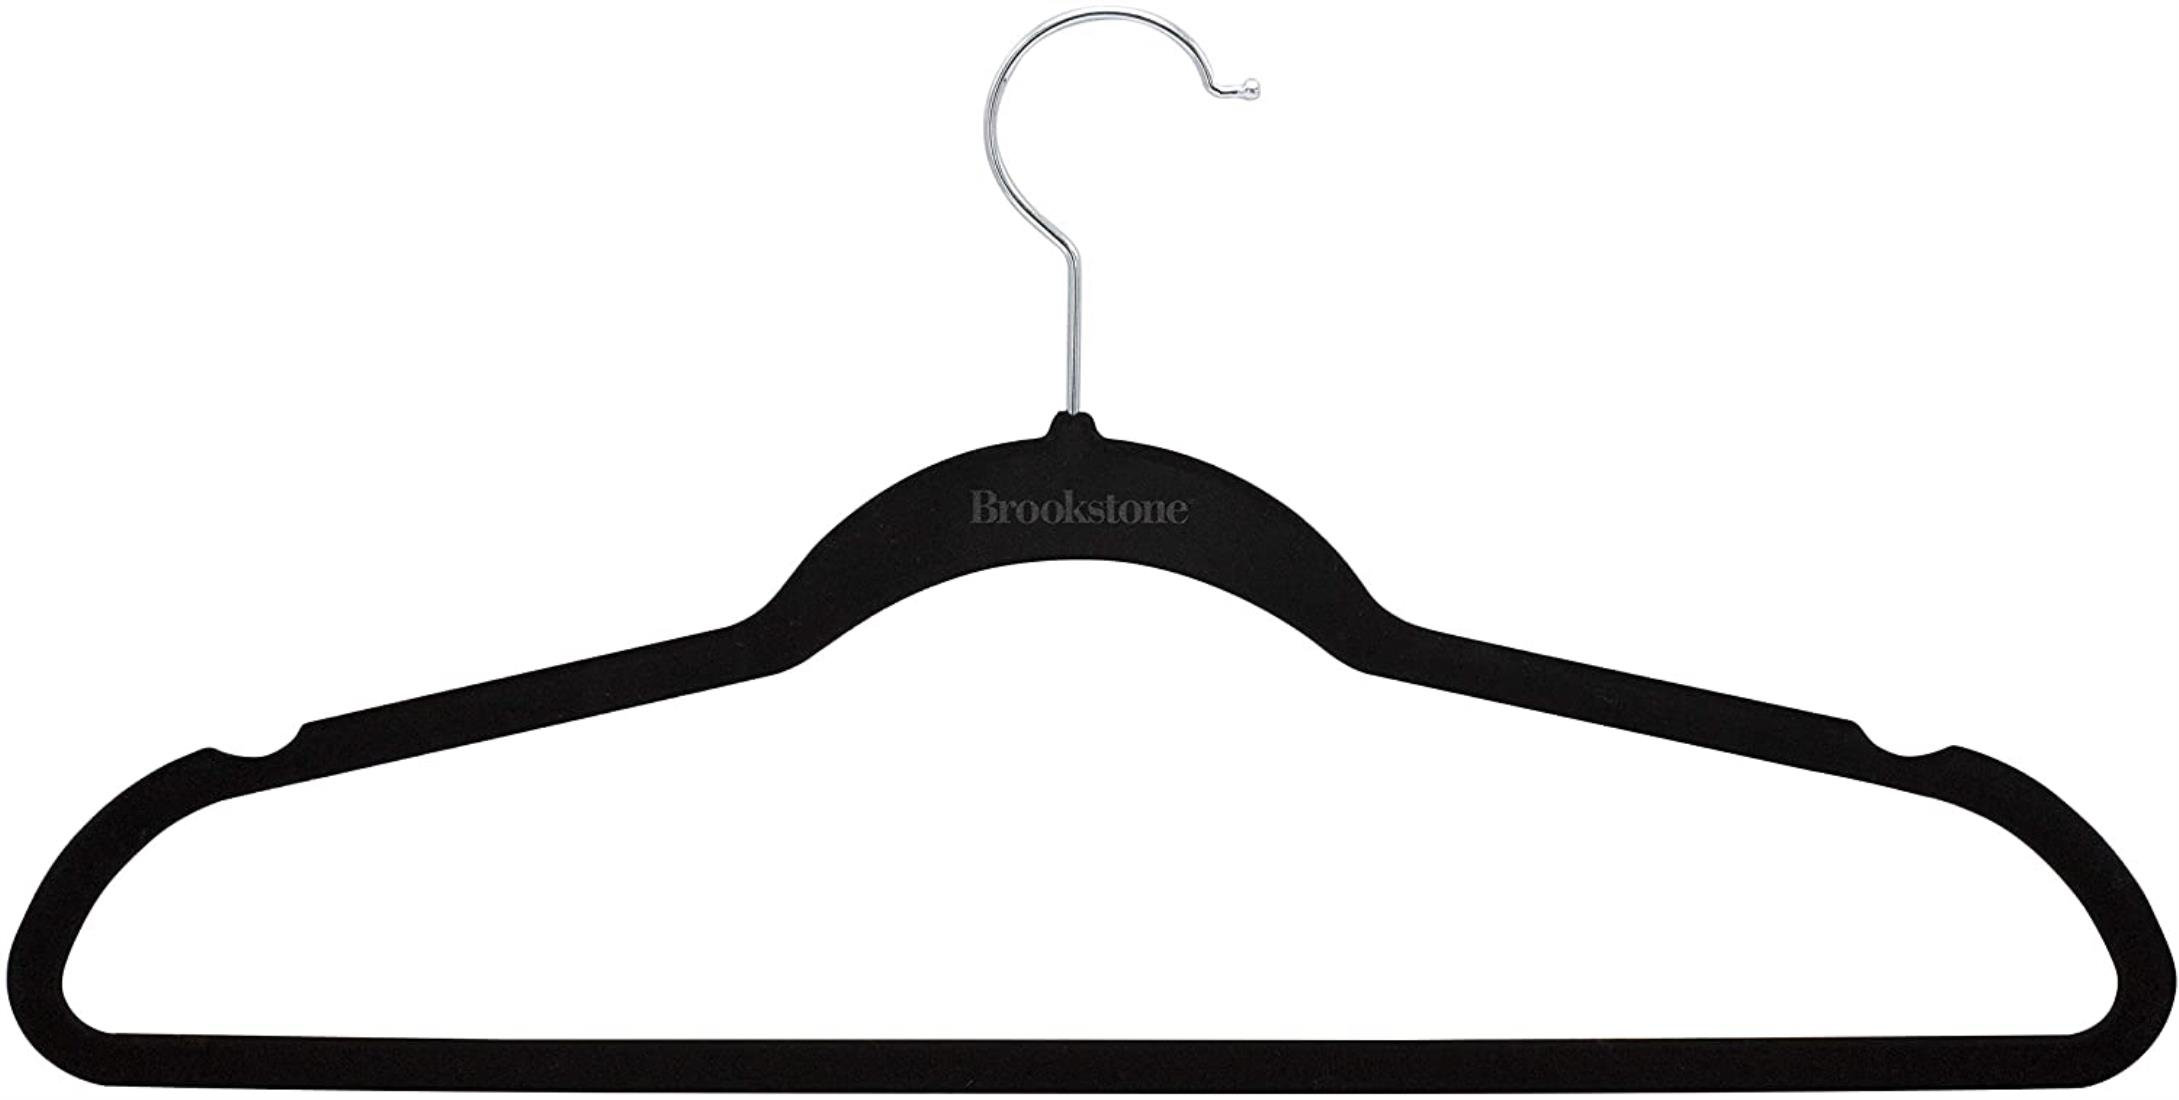 Heavy Duty Slim Velvet Hangers Hanger Central 50 360-Rotating Chrome Swivel Hook Space Saving Ridged Non-Slip Black